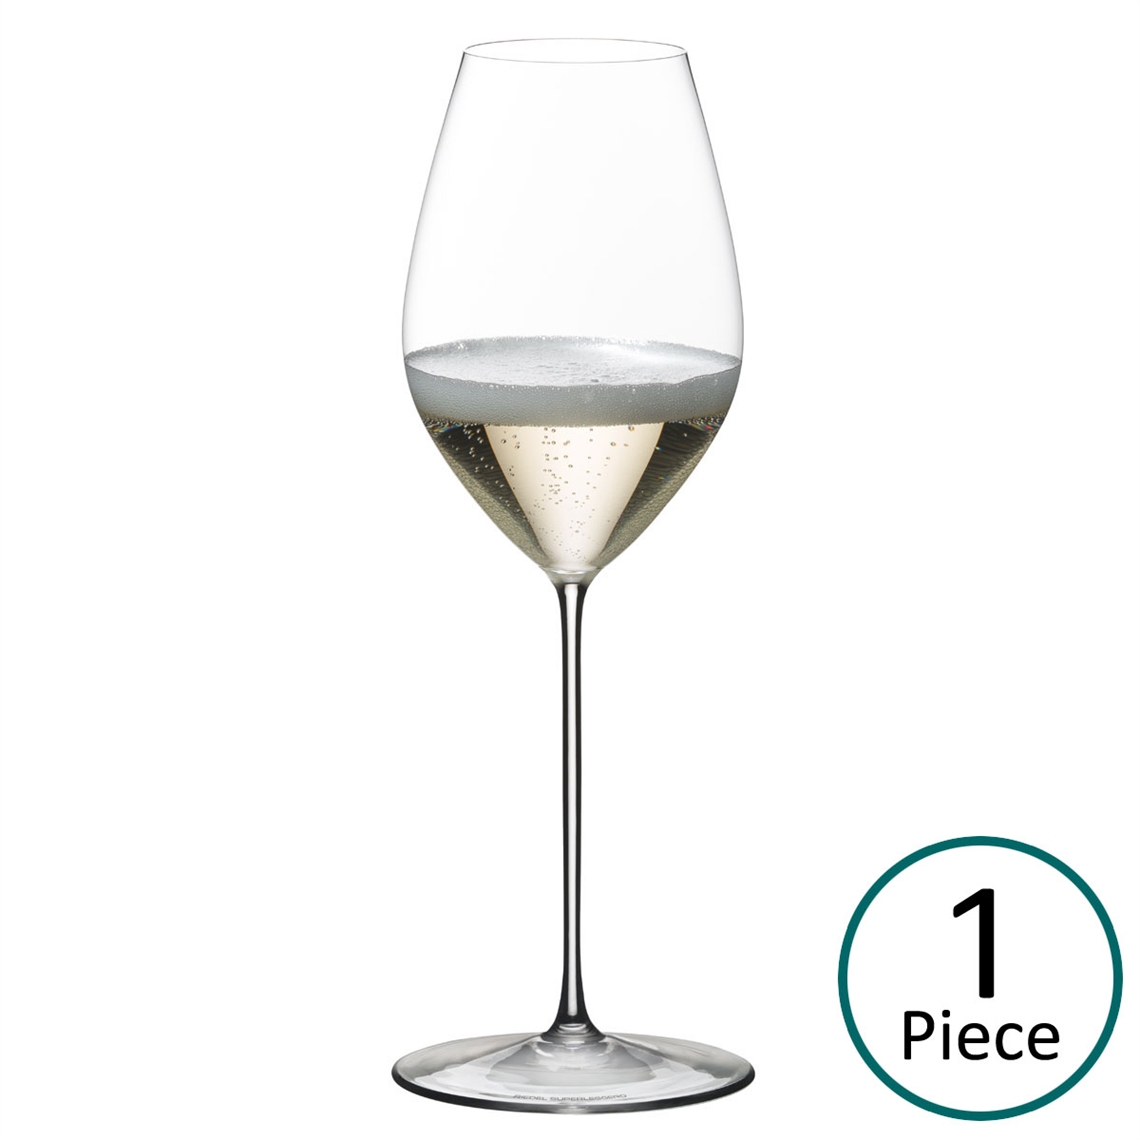 Riedel Superleggero Champagne Wine Glass - 6425/28